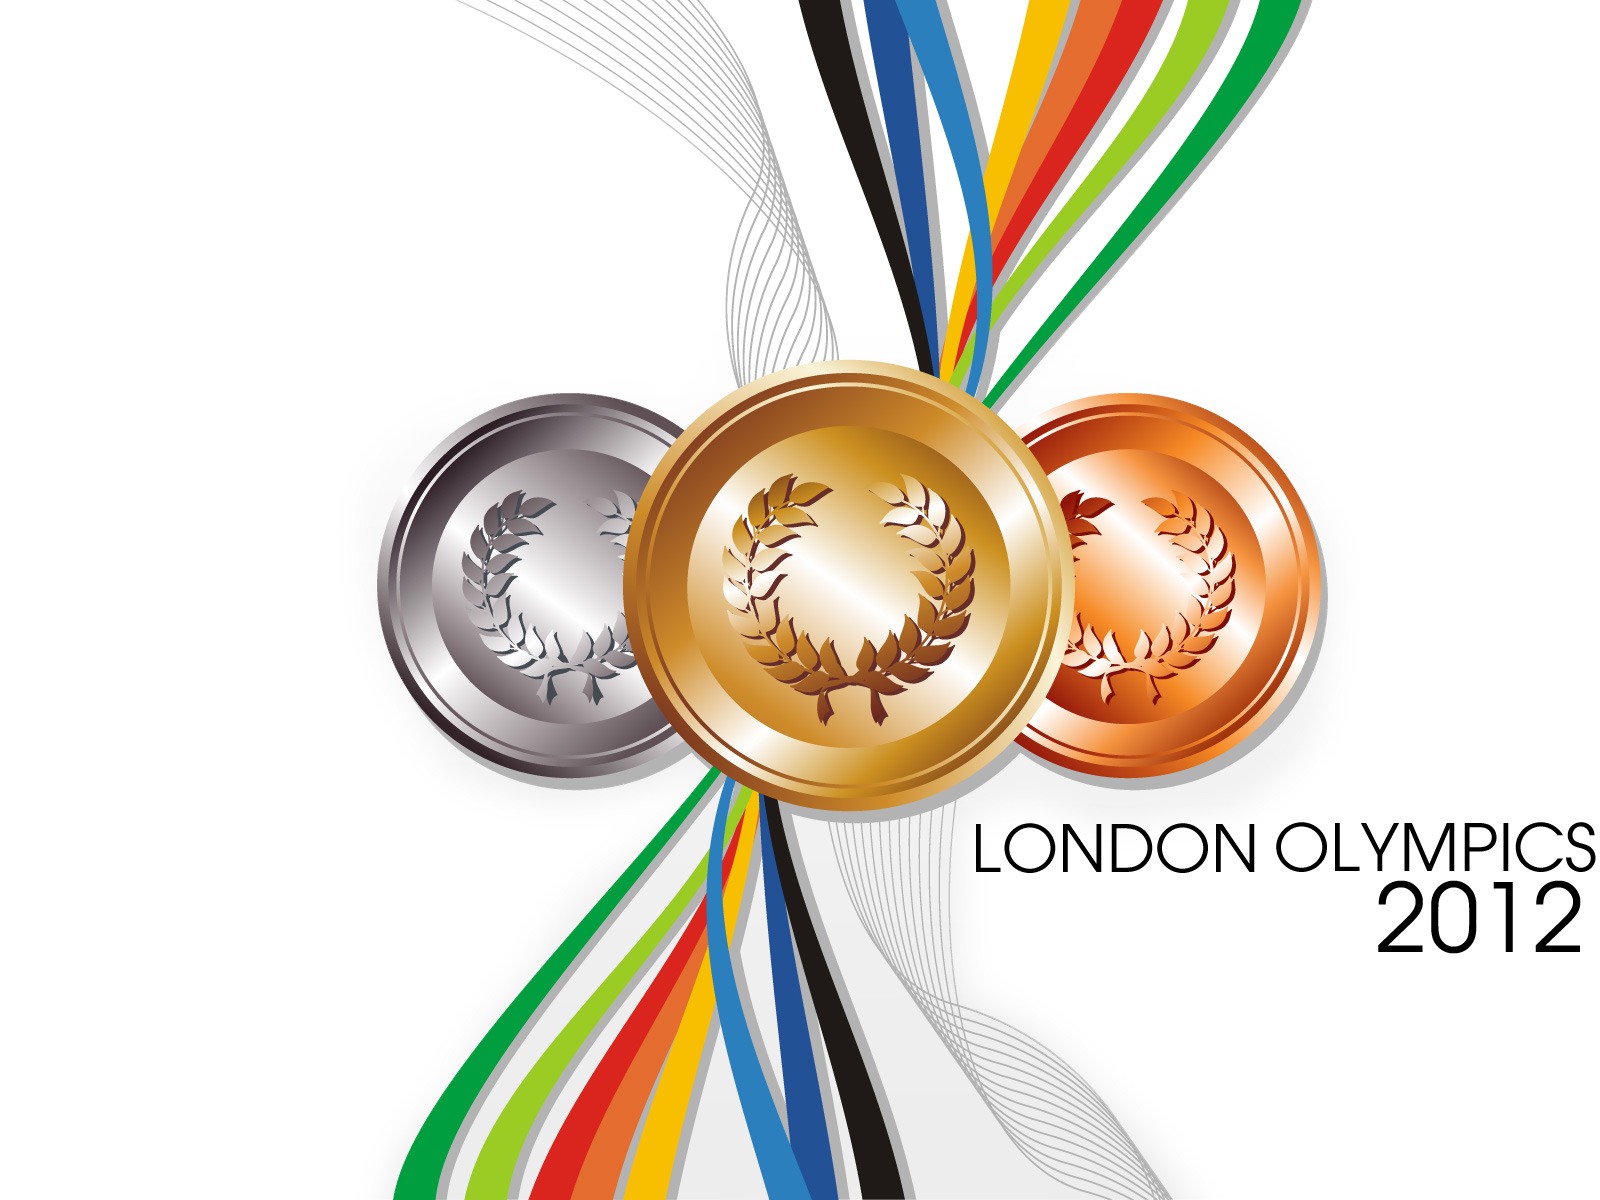 Londres 2012 Olimpiadas fondos temáticos (2) #12 - 1600x1200